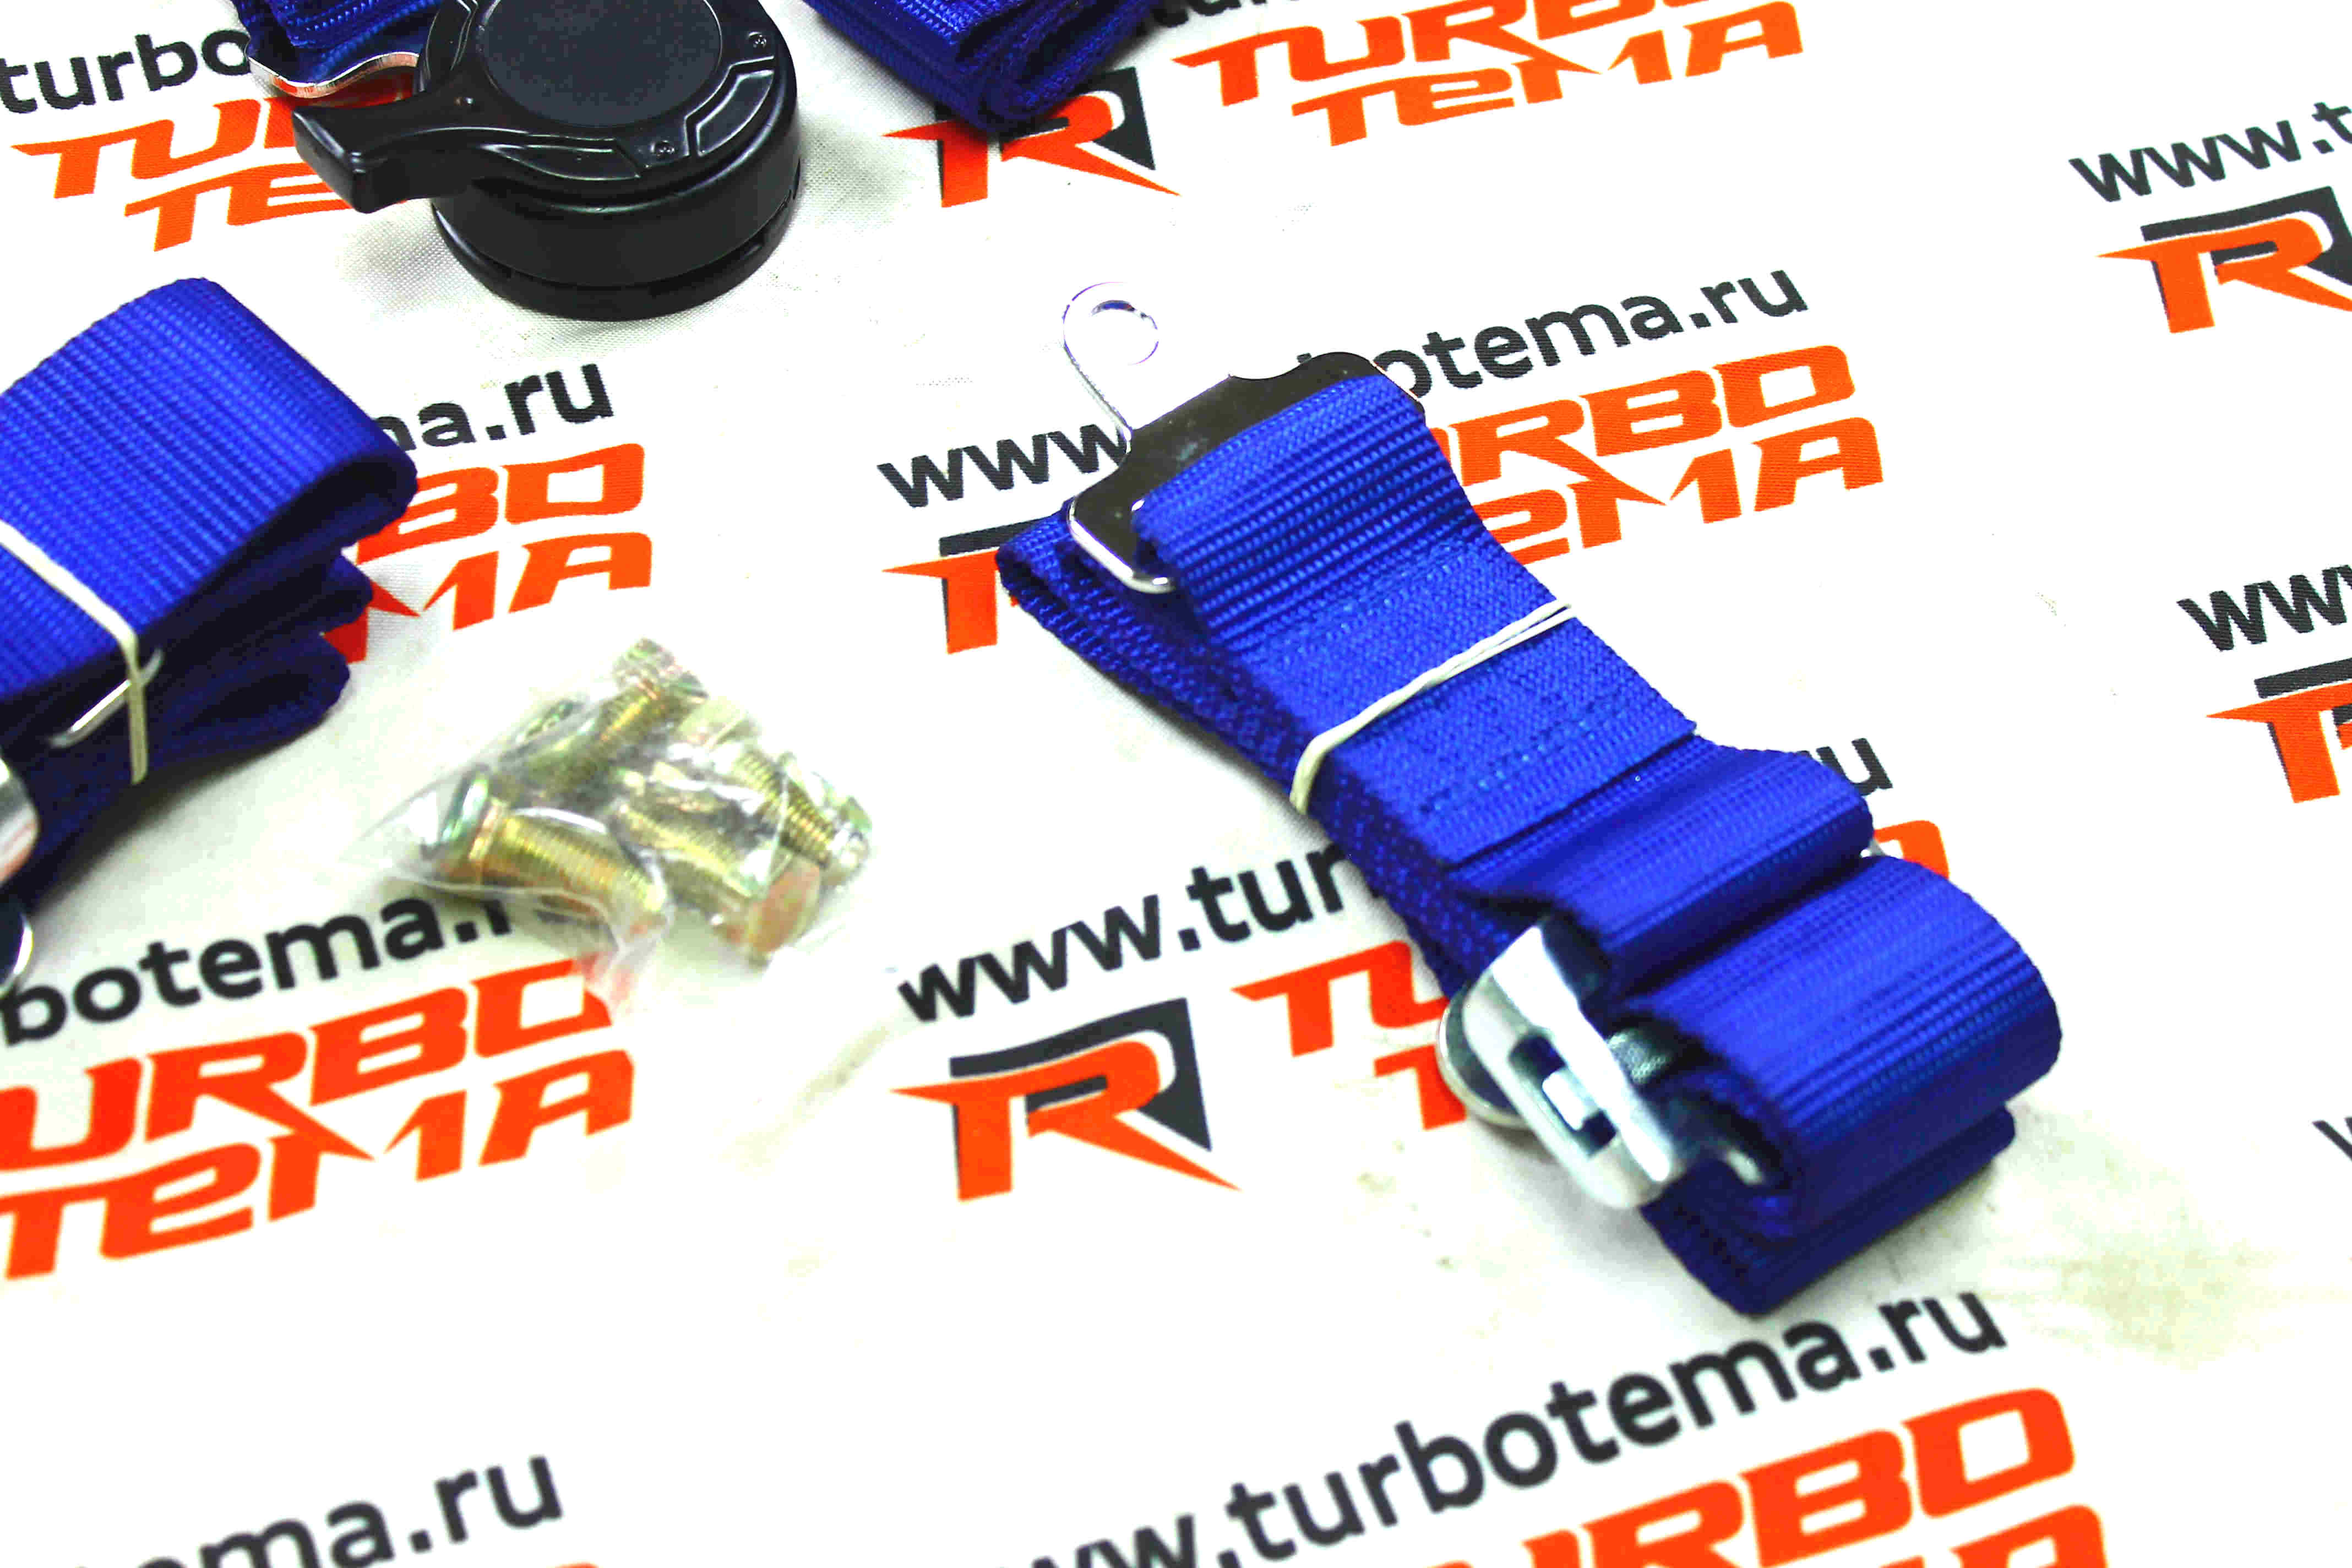 Ремни безопасности "TURBOTEMA" 4-х точечные, 2" ширина, быстросъемные (синие) JBR4001-4. Фото �4